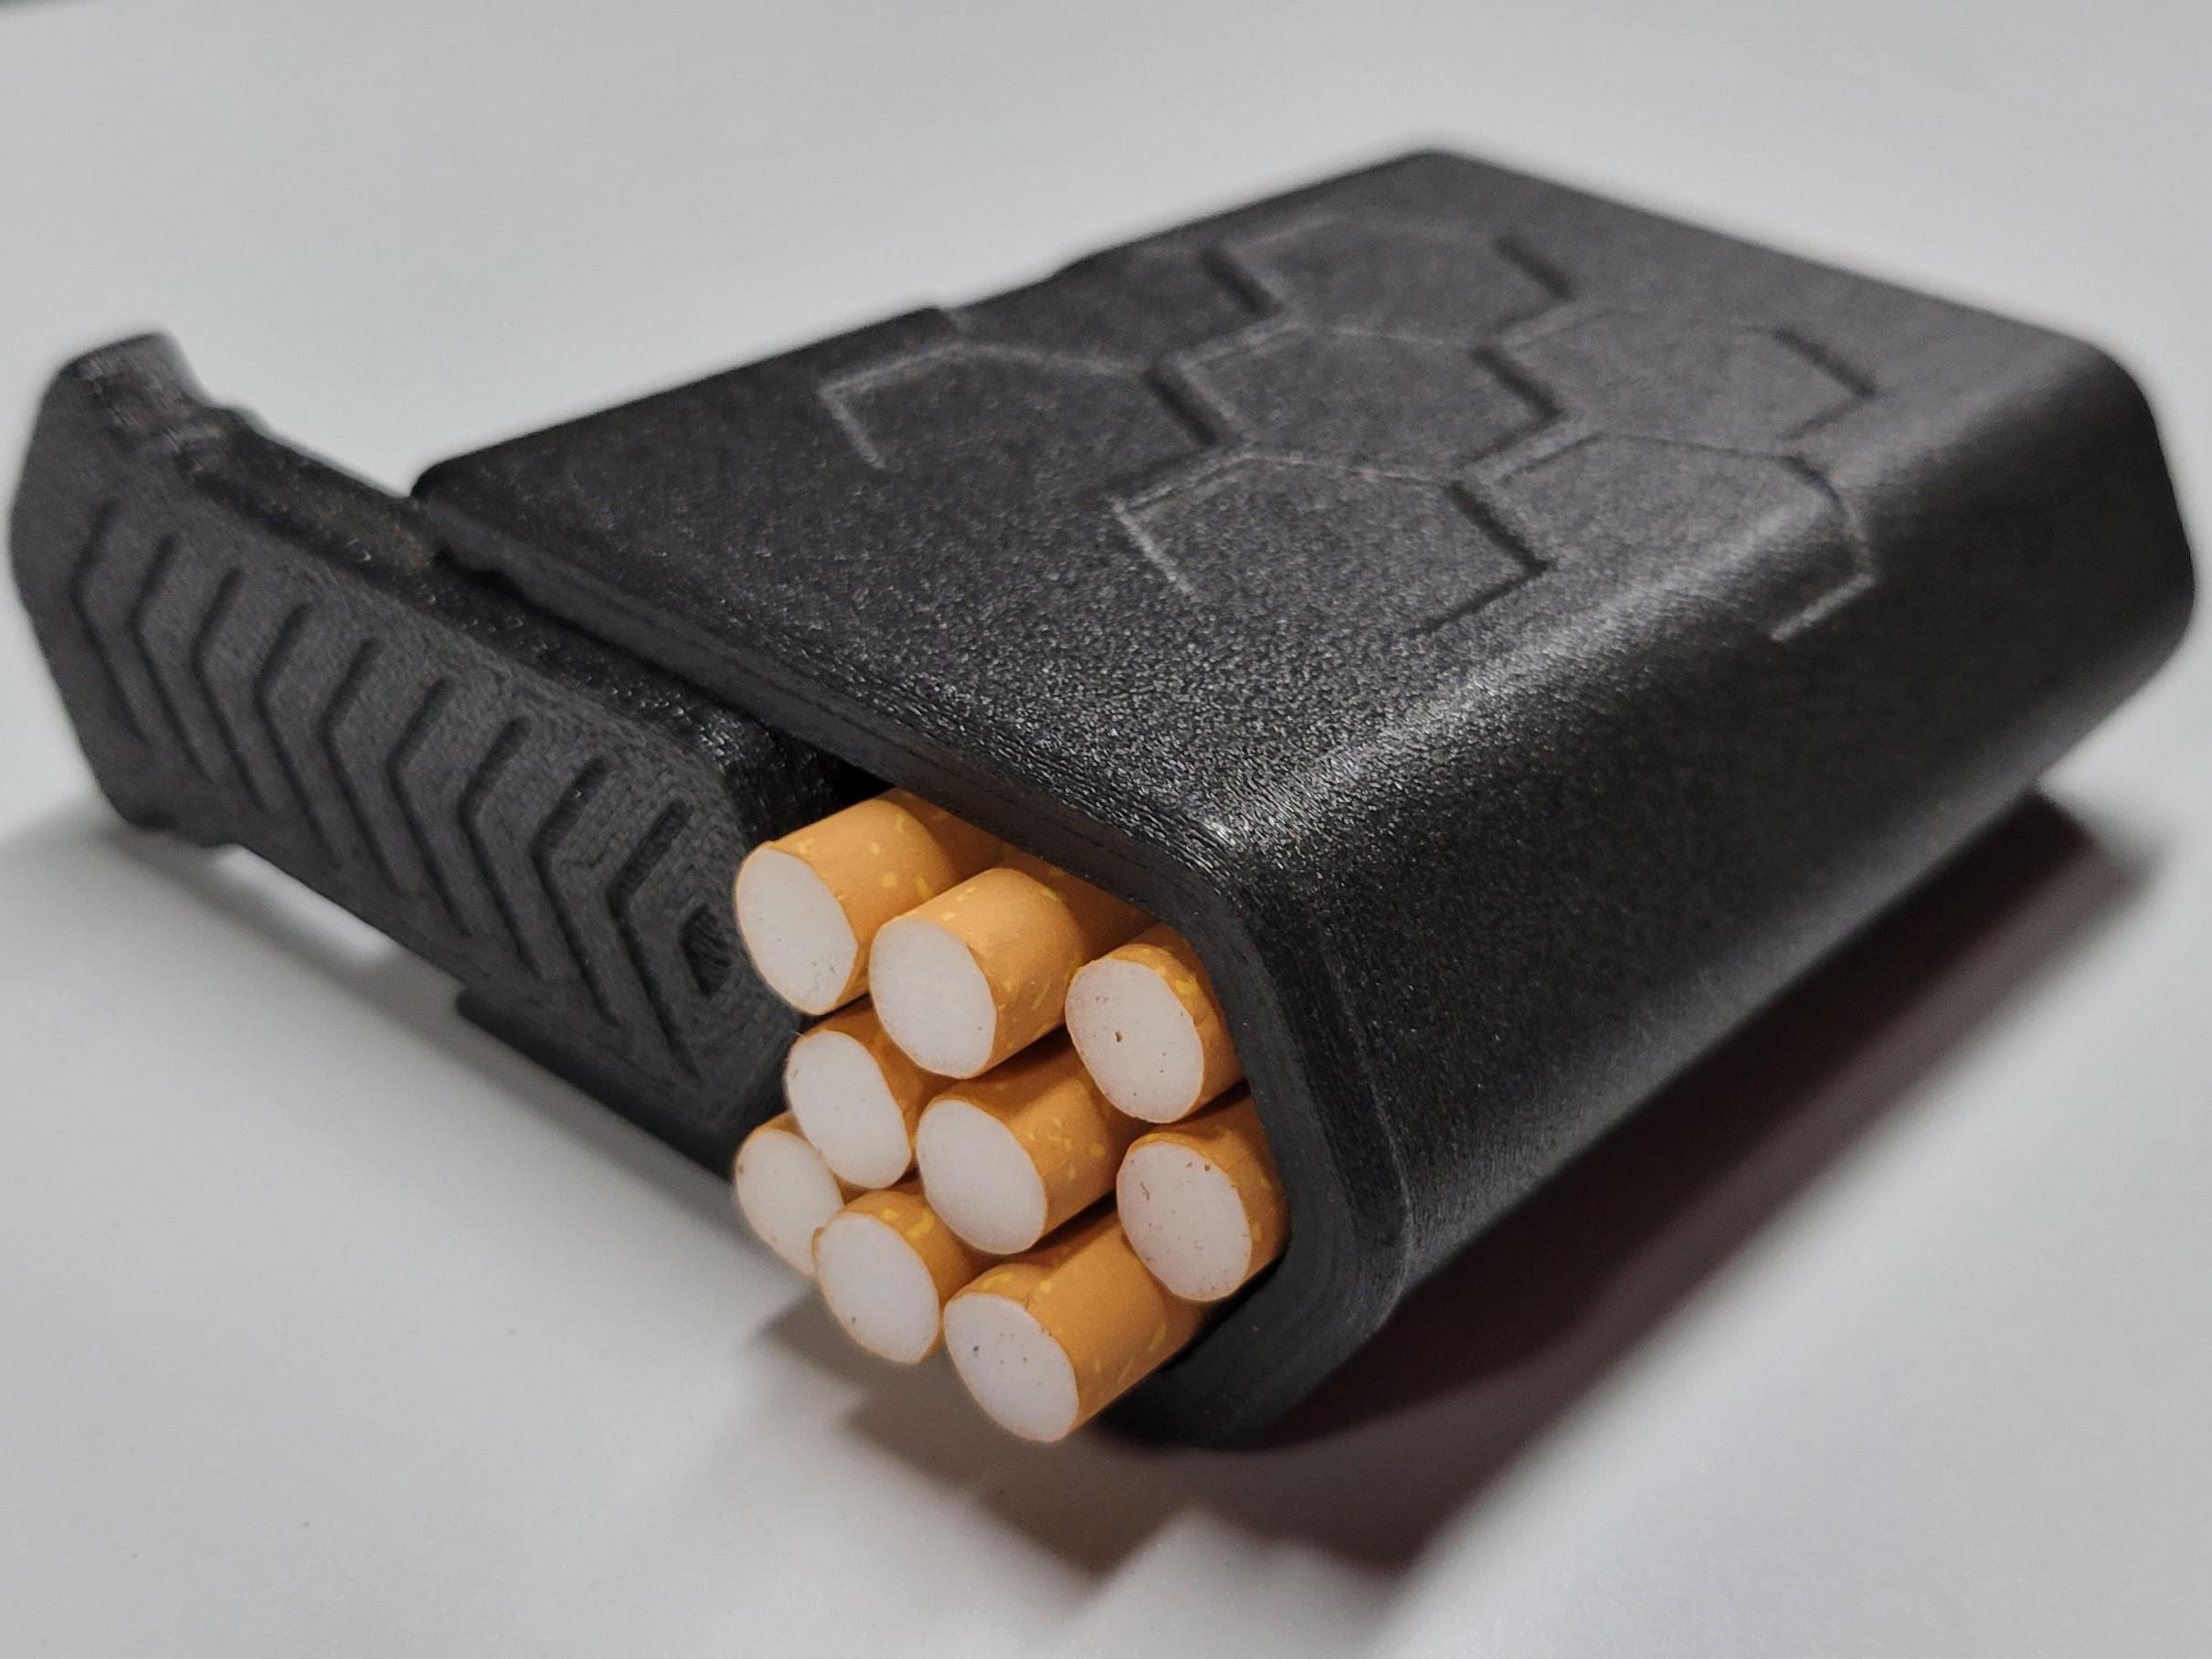 dragon cigarette holder ring | 3D Print Model